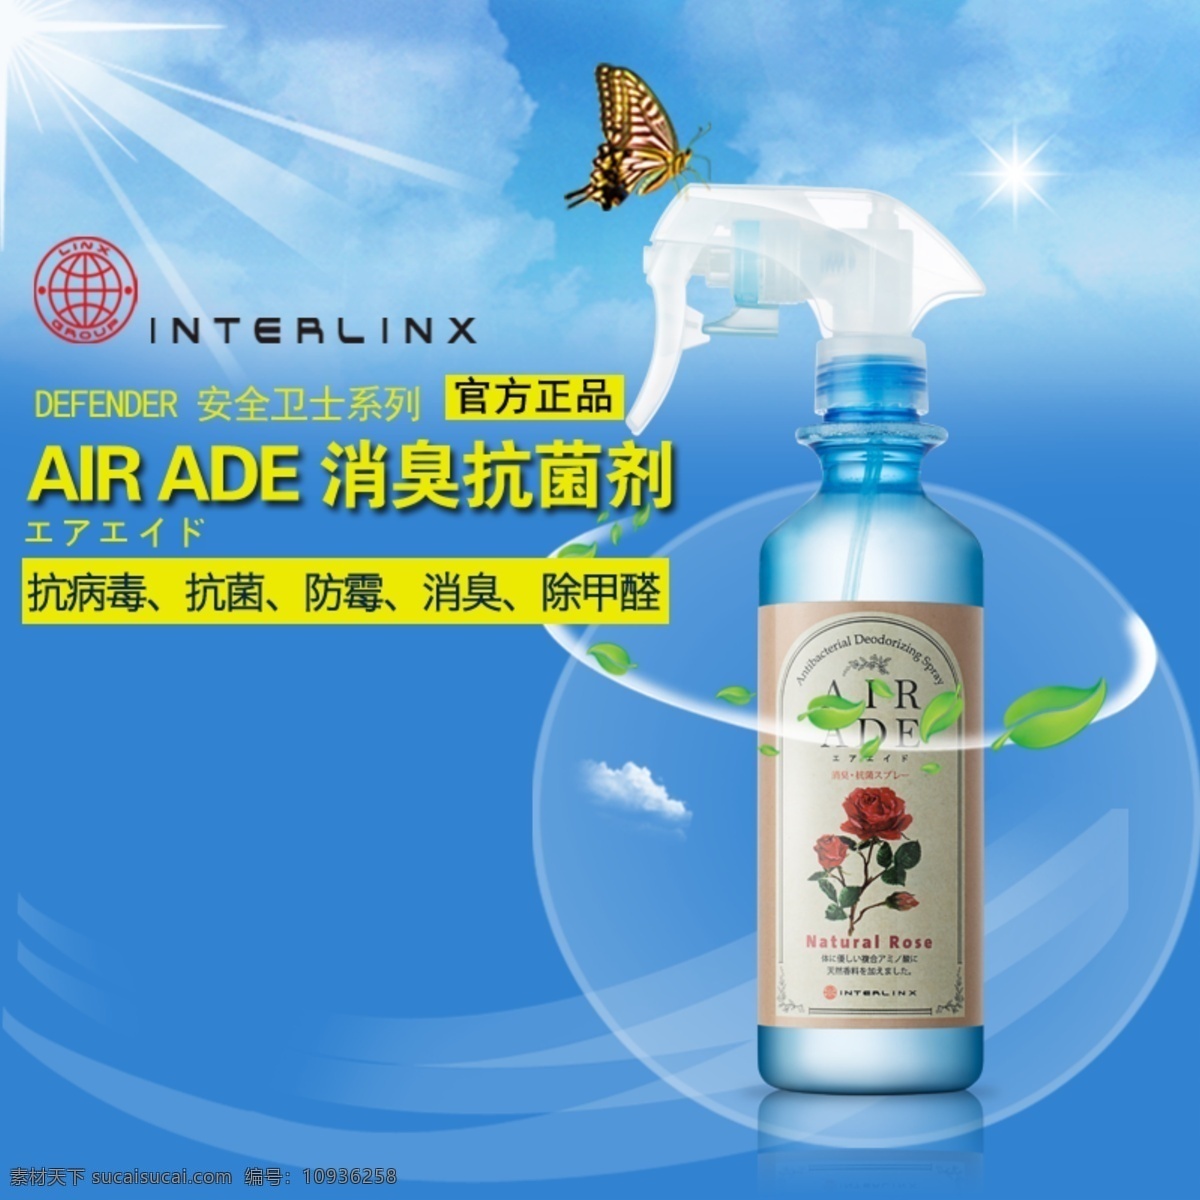 air ade 消 臭 抗菌剂 主 图 淘宝素材 淘宝设计 淘宝模板下载 蓝色